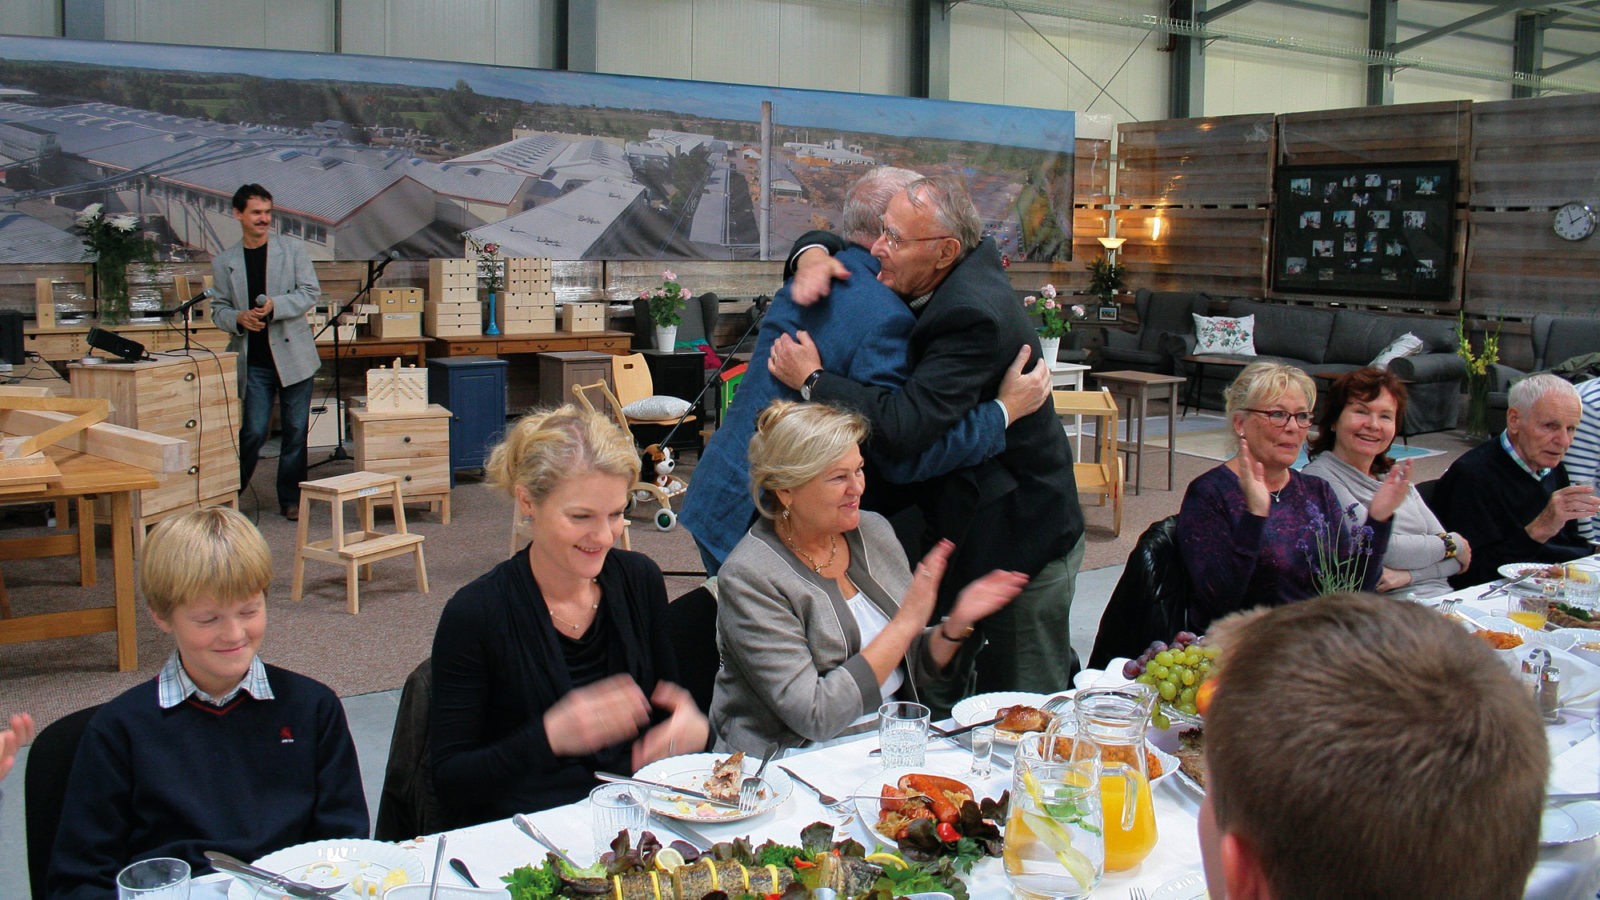 Grupp med glada människor vid festdukat bord i ett showroom i en fabrik. Ingvar Kamprad kramar Roman Prawda, båda har kostym.